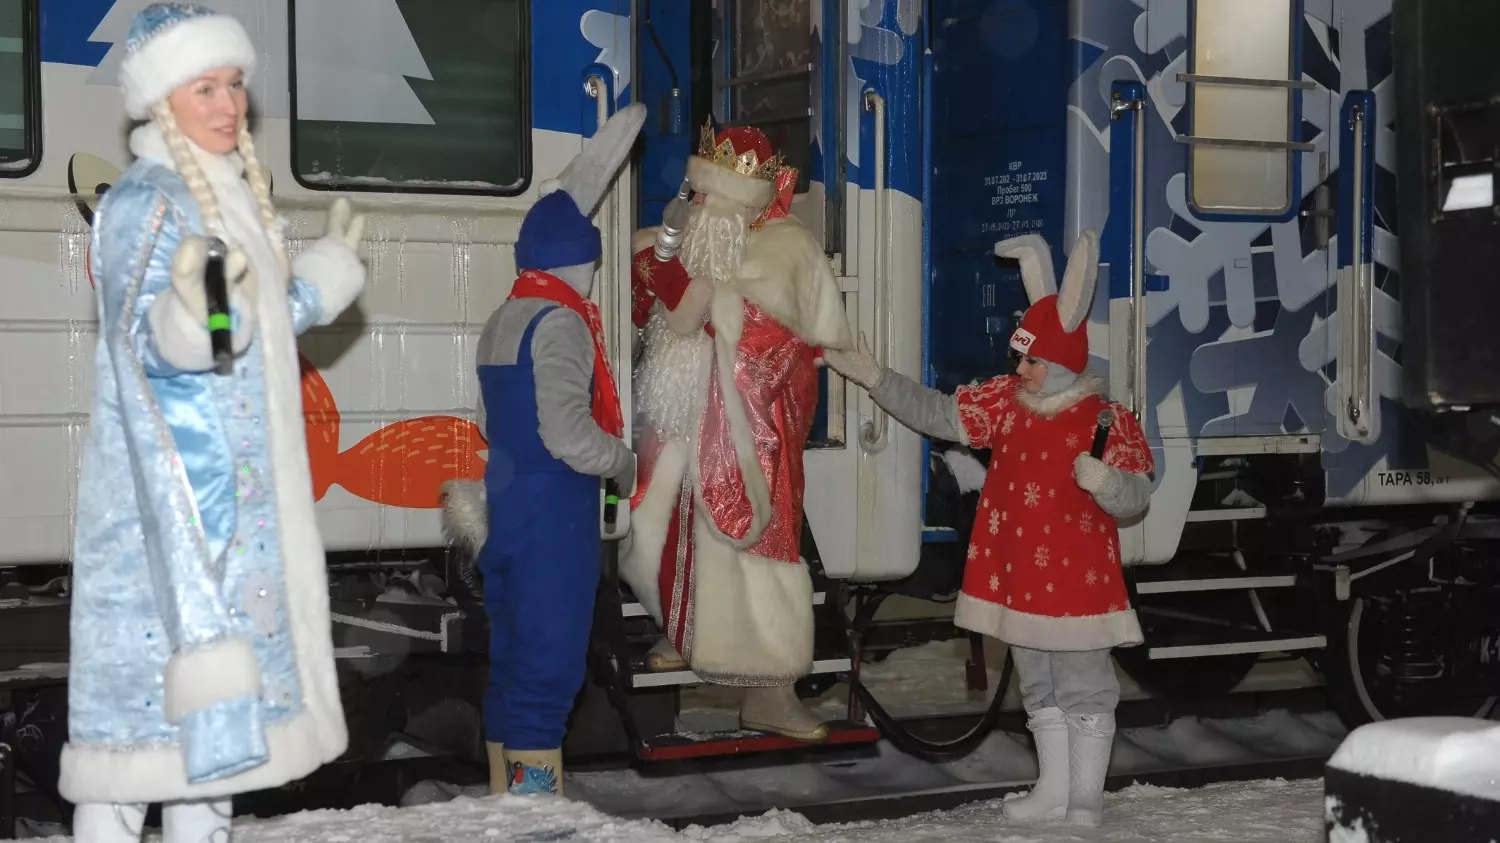 Момент выхода Деда Мороза из поезда. Его внучка появилась несколько раньше.